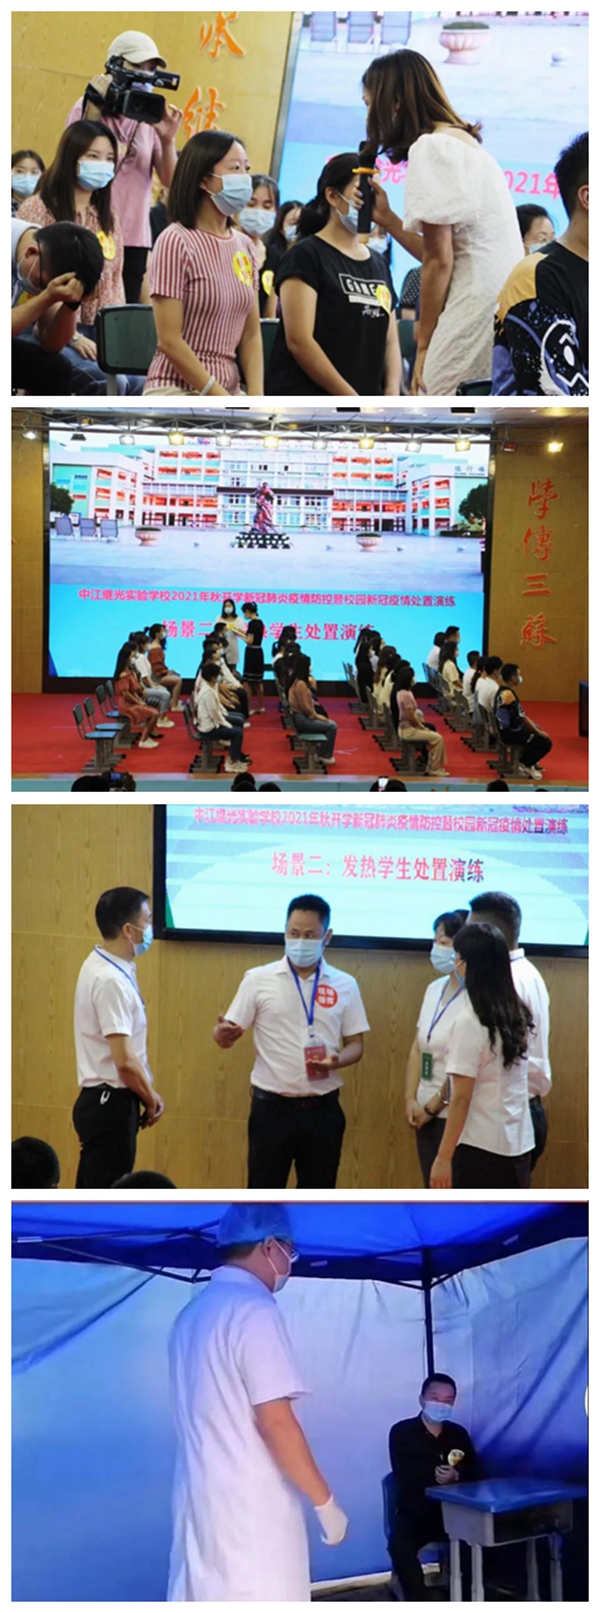 中江县继光实验学校举行2021年秋校园新冠疫情处置实操演练